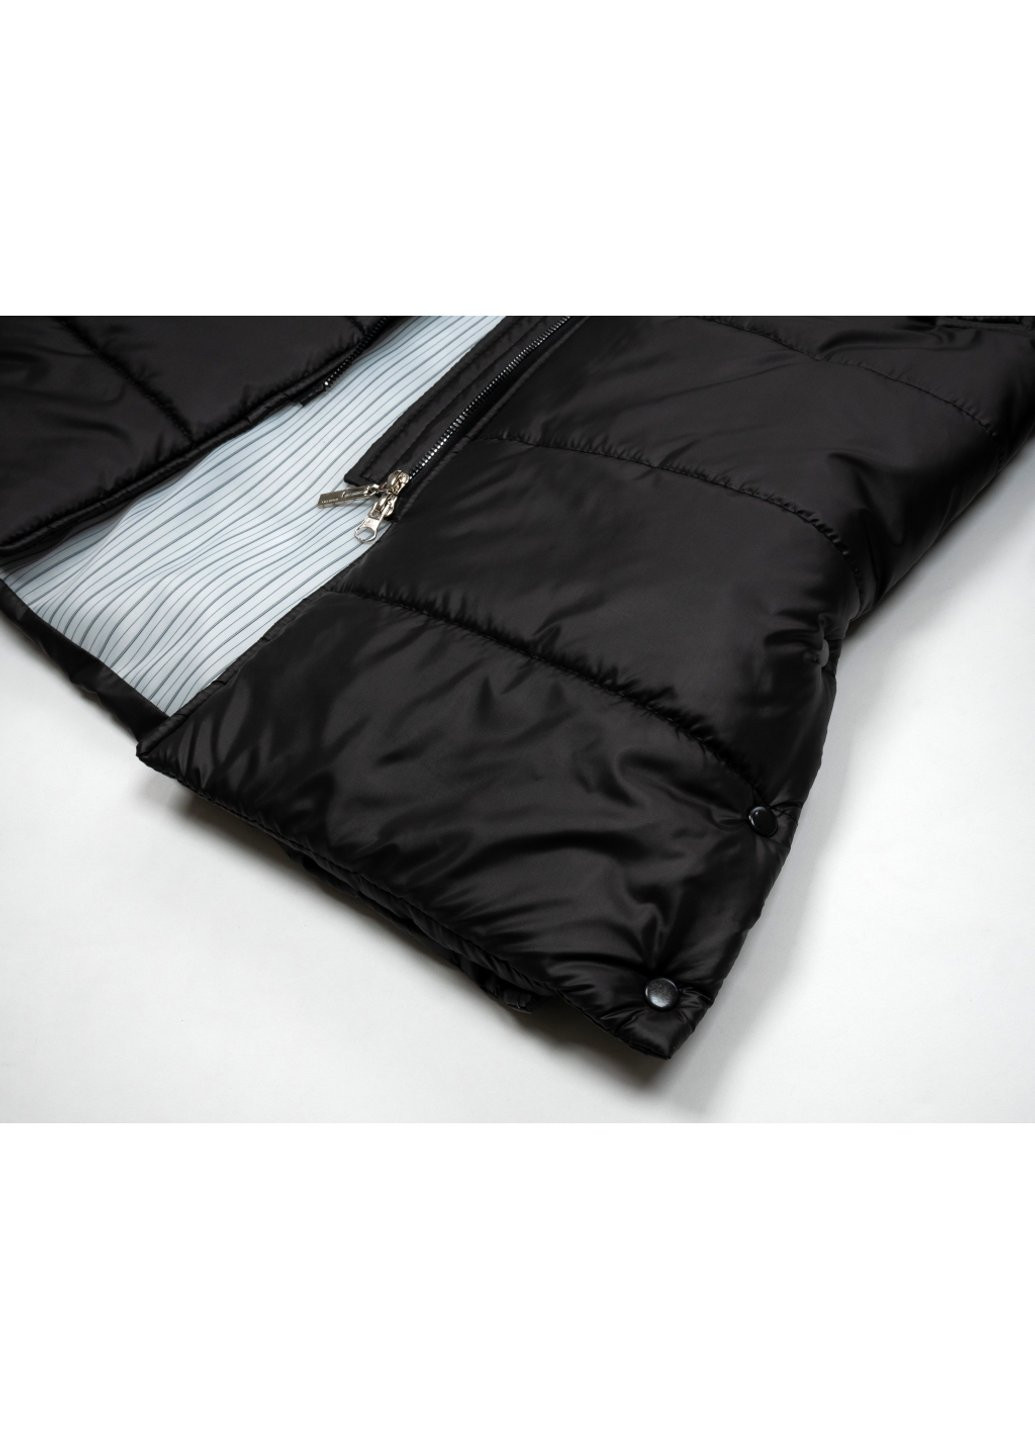 Черная демисезонная куртка пальто "donna" (21705-152g-black) Brilliant